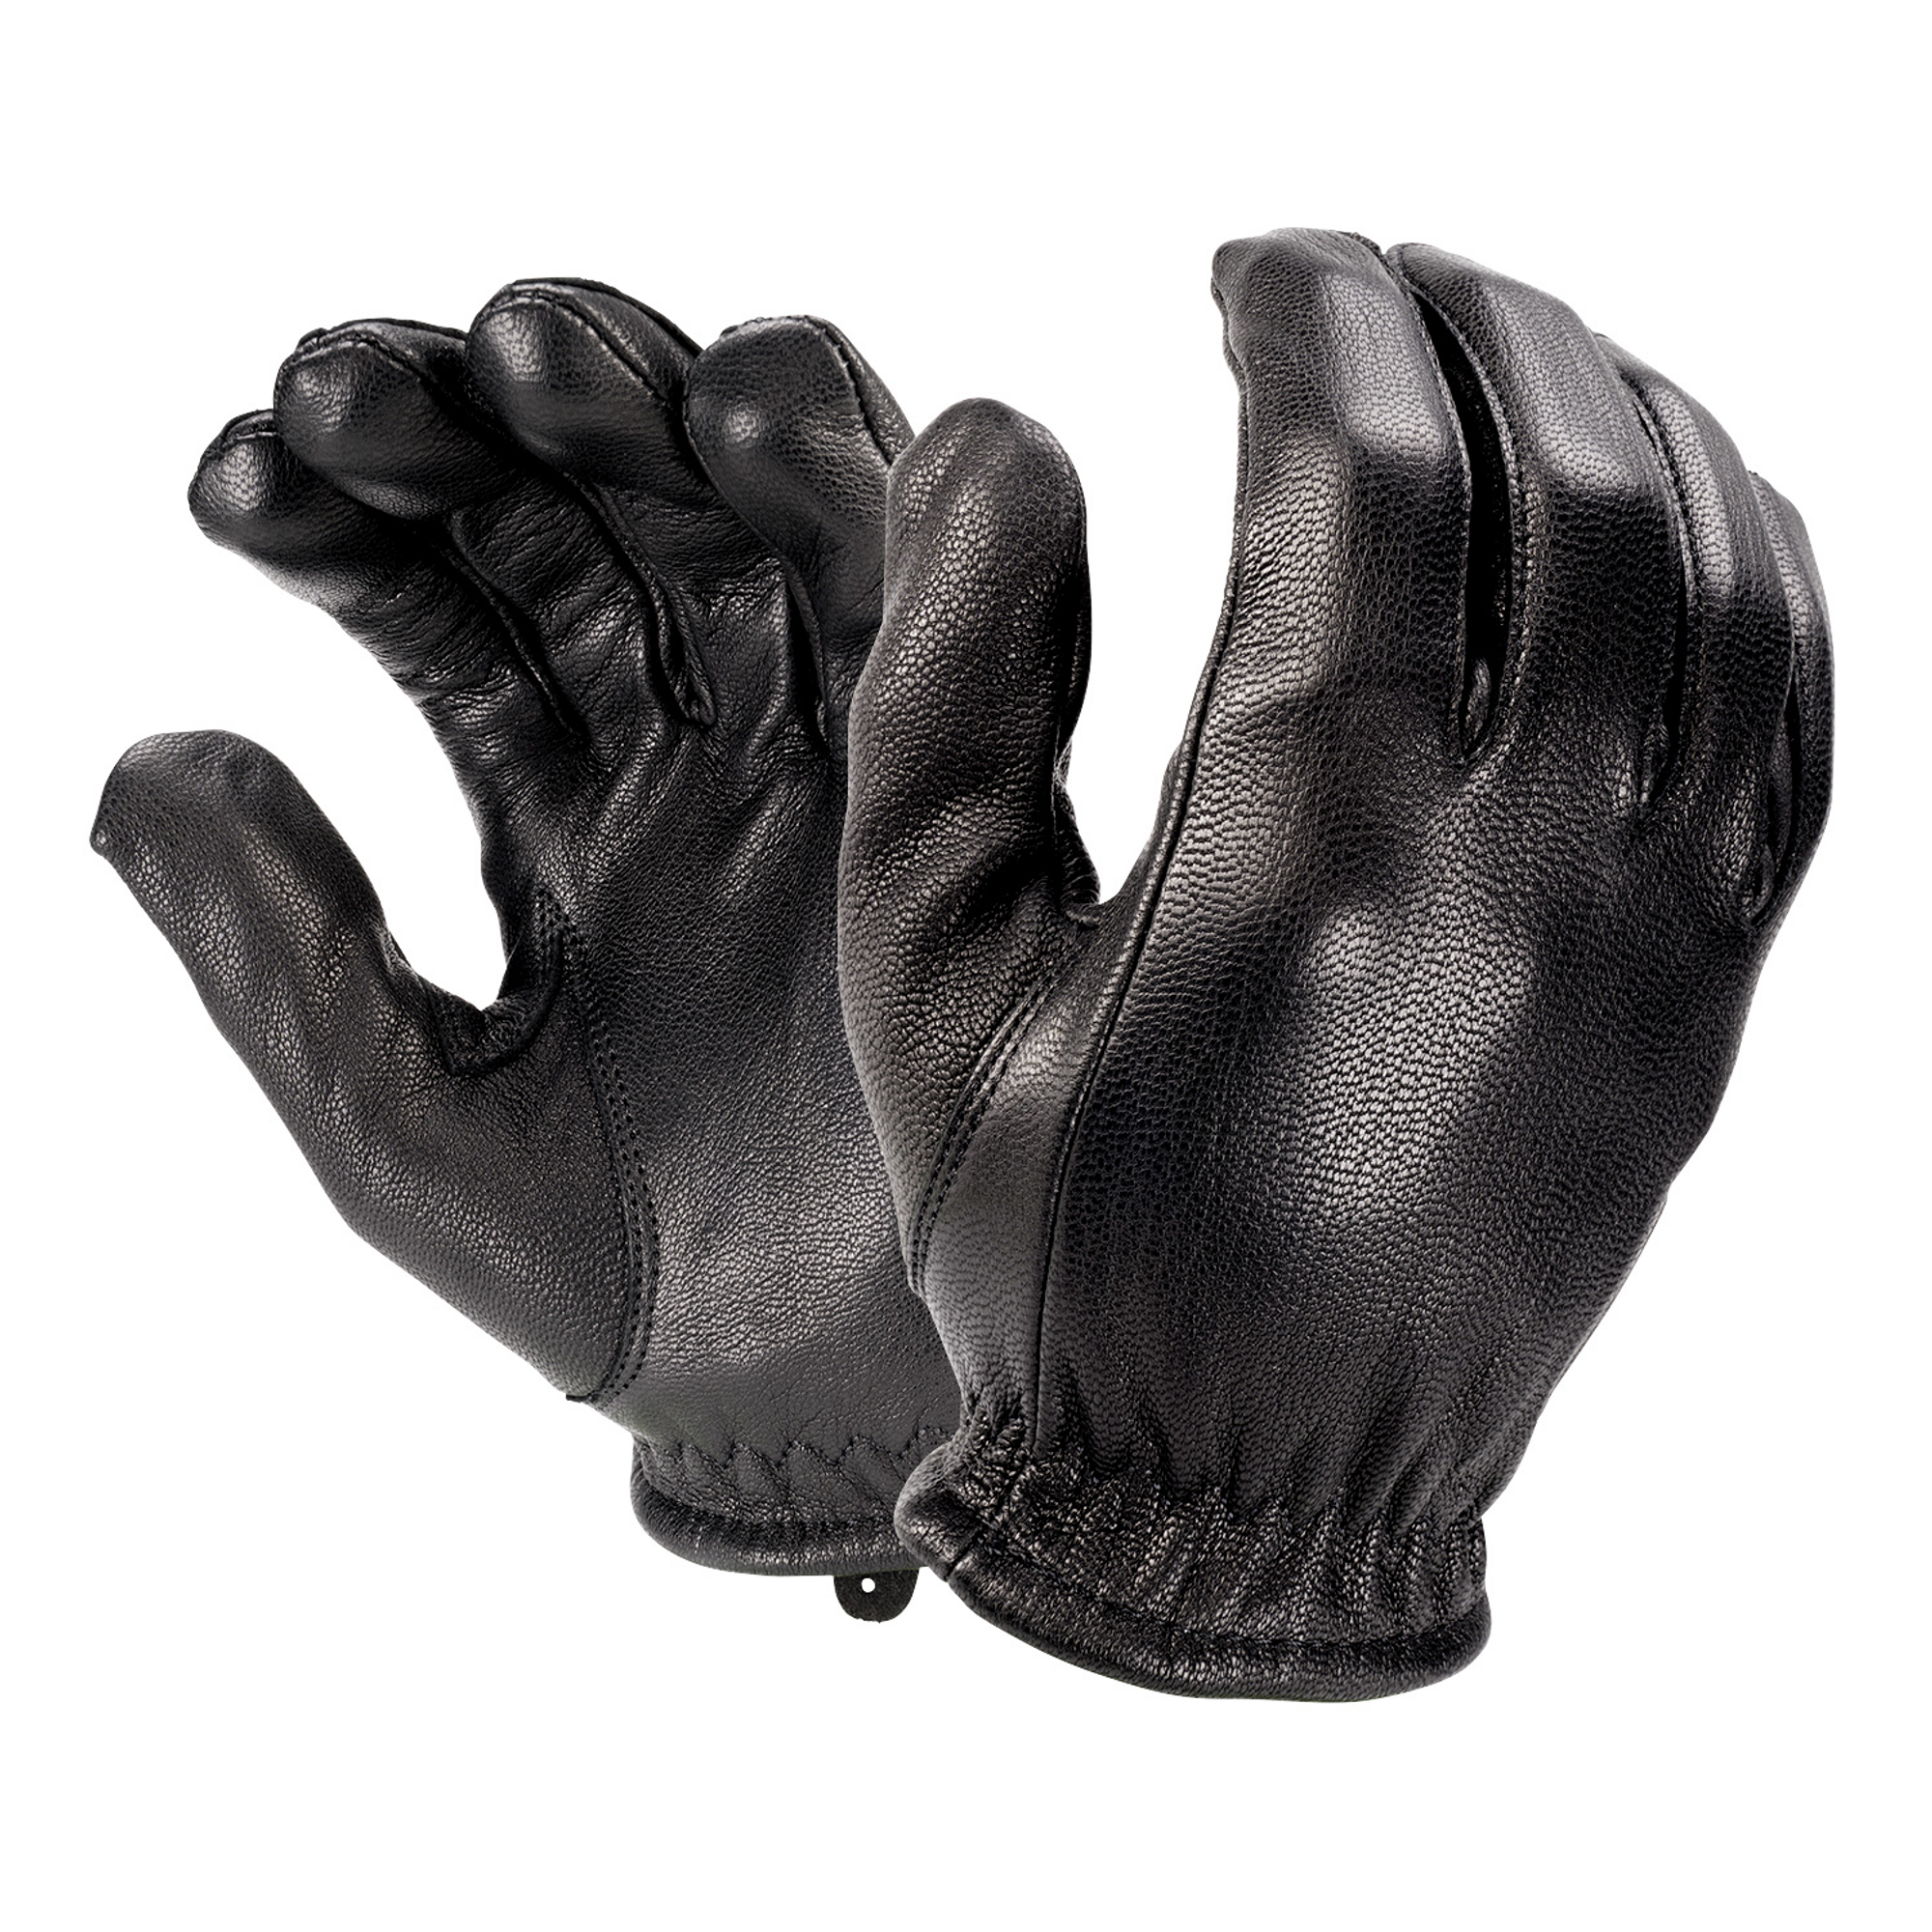 Friskmaster All-leather, Cut-resistant Police Duty Glove - KRFM2000XXXL